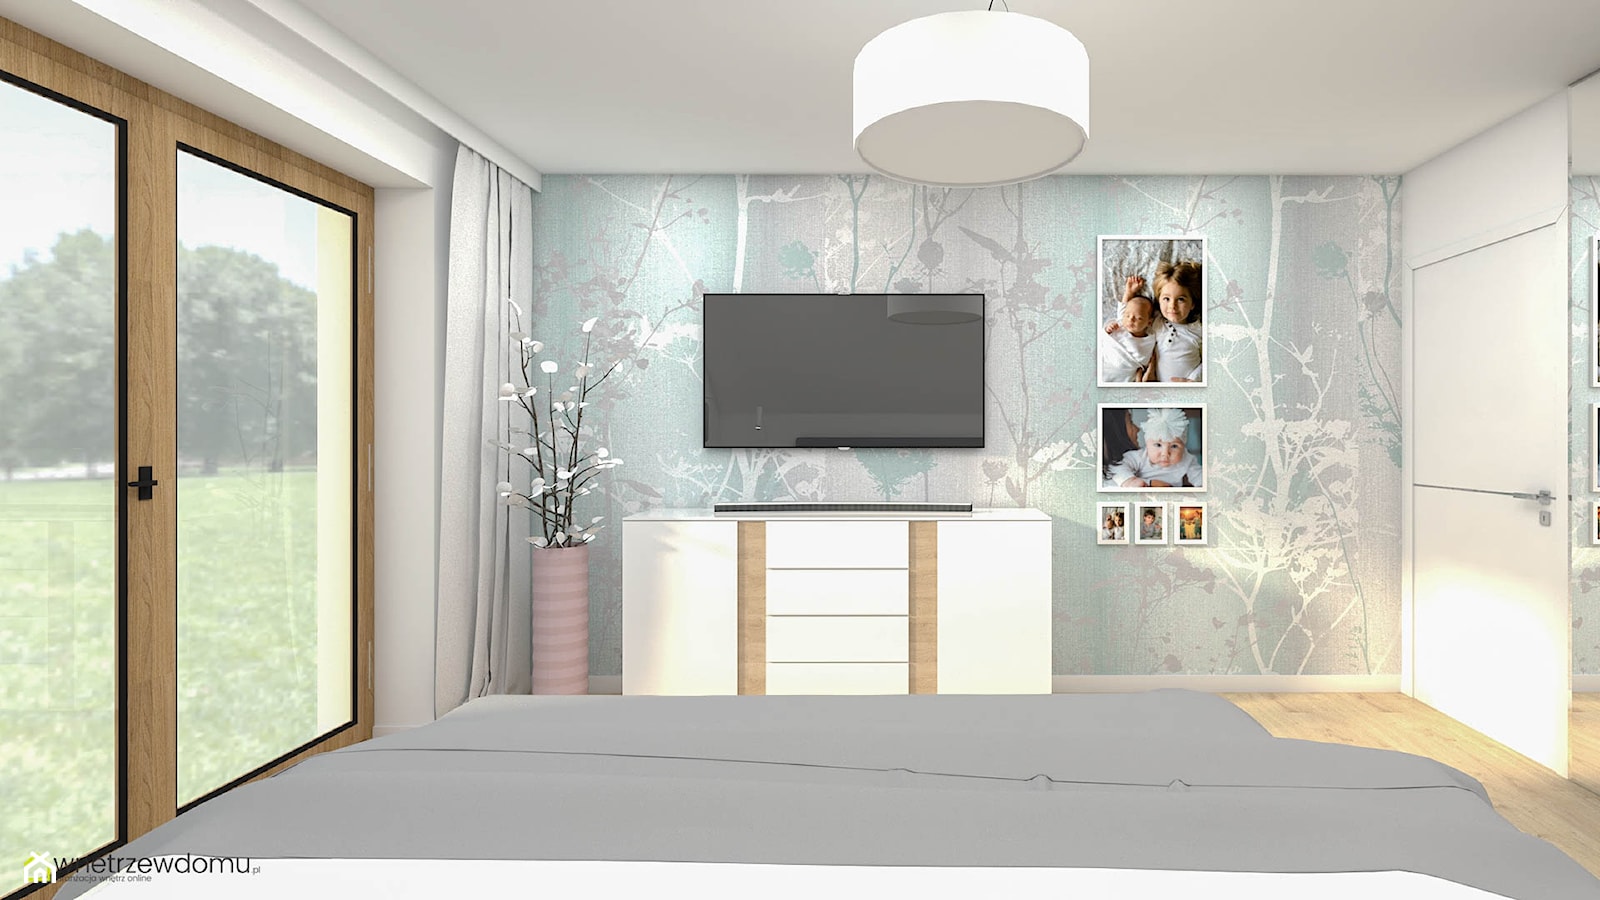 Sypialnia z tapetą w kwiaty - zdjęcie od wnetrzewdomu - Homebook